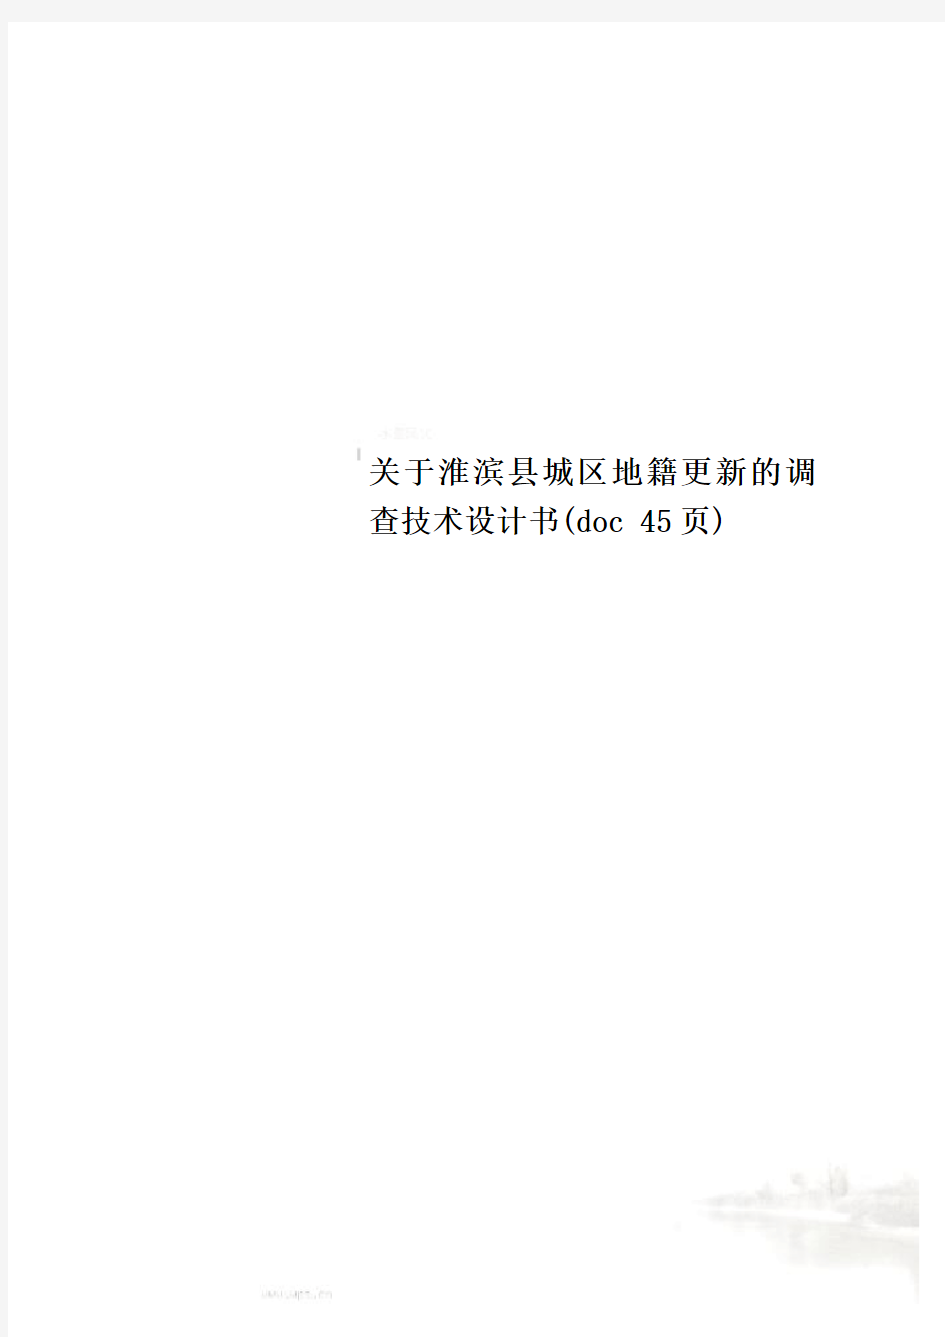 关于淮滨县城区地籍更新的调查技术设计书(doc 45页)